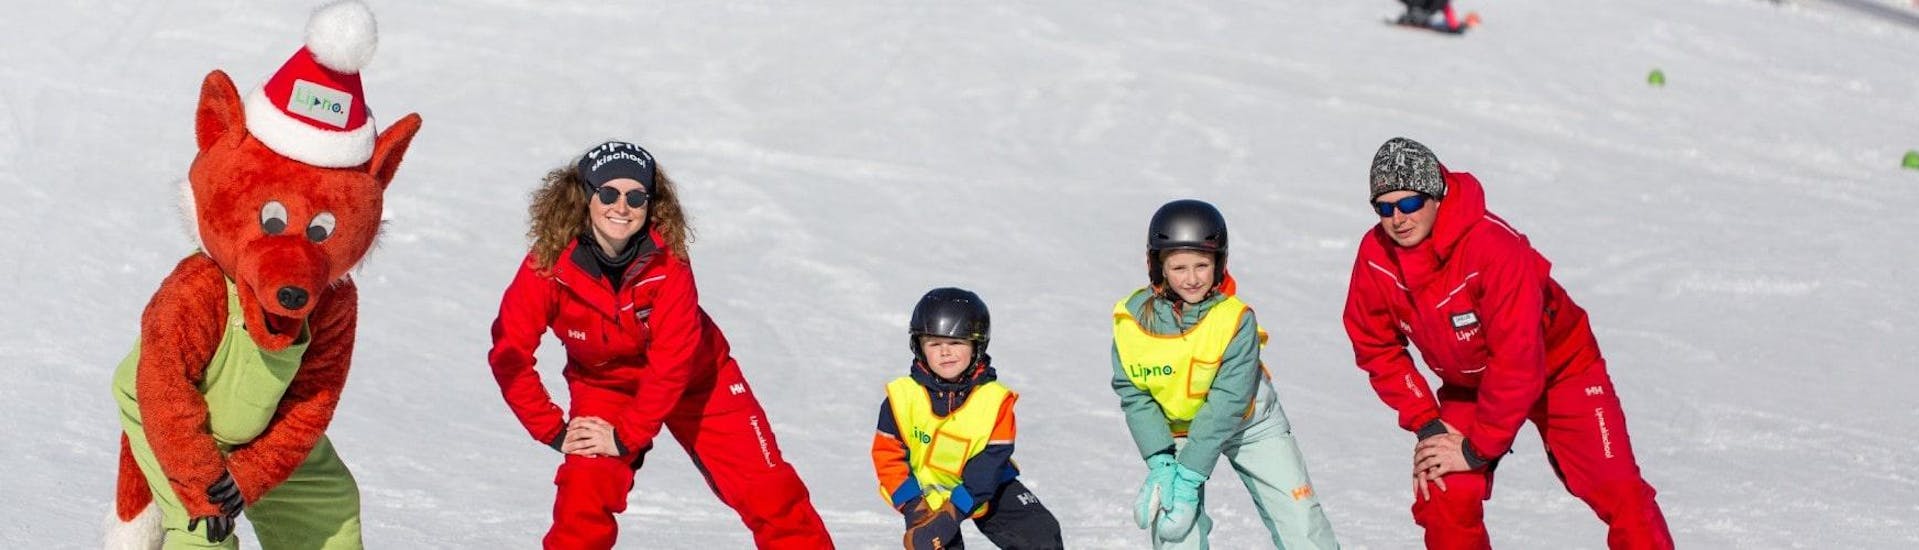 Skilessen voor kinderen vanaf 4 jaar voor alle niveaus.